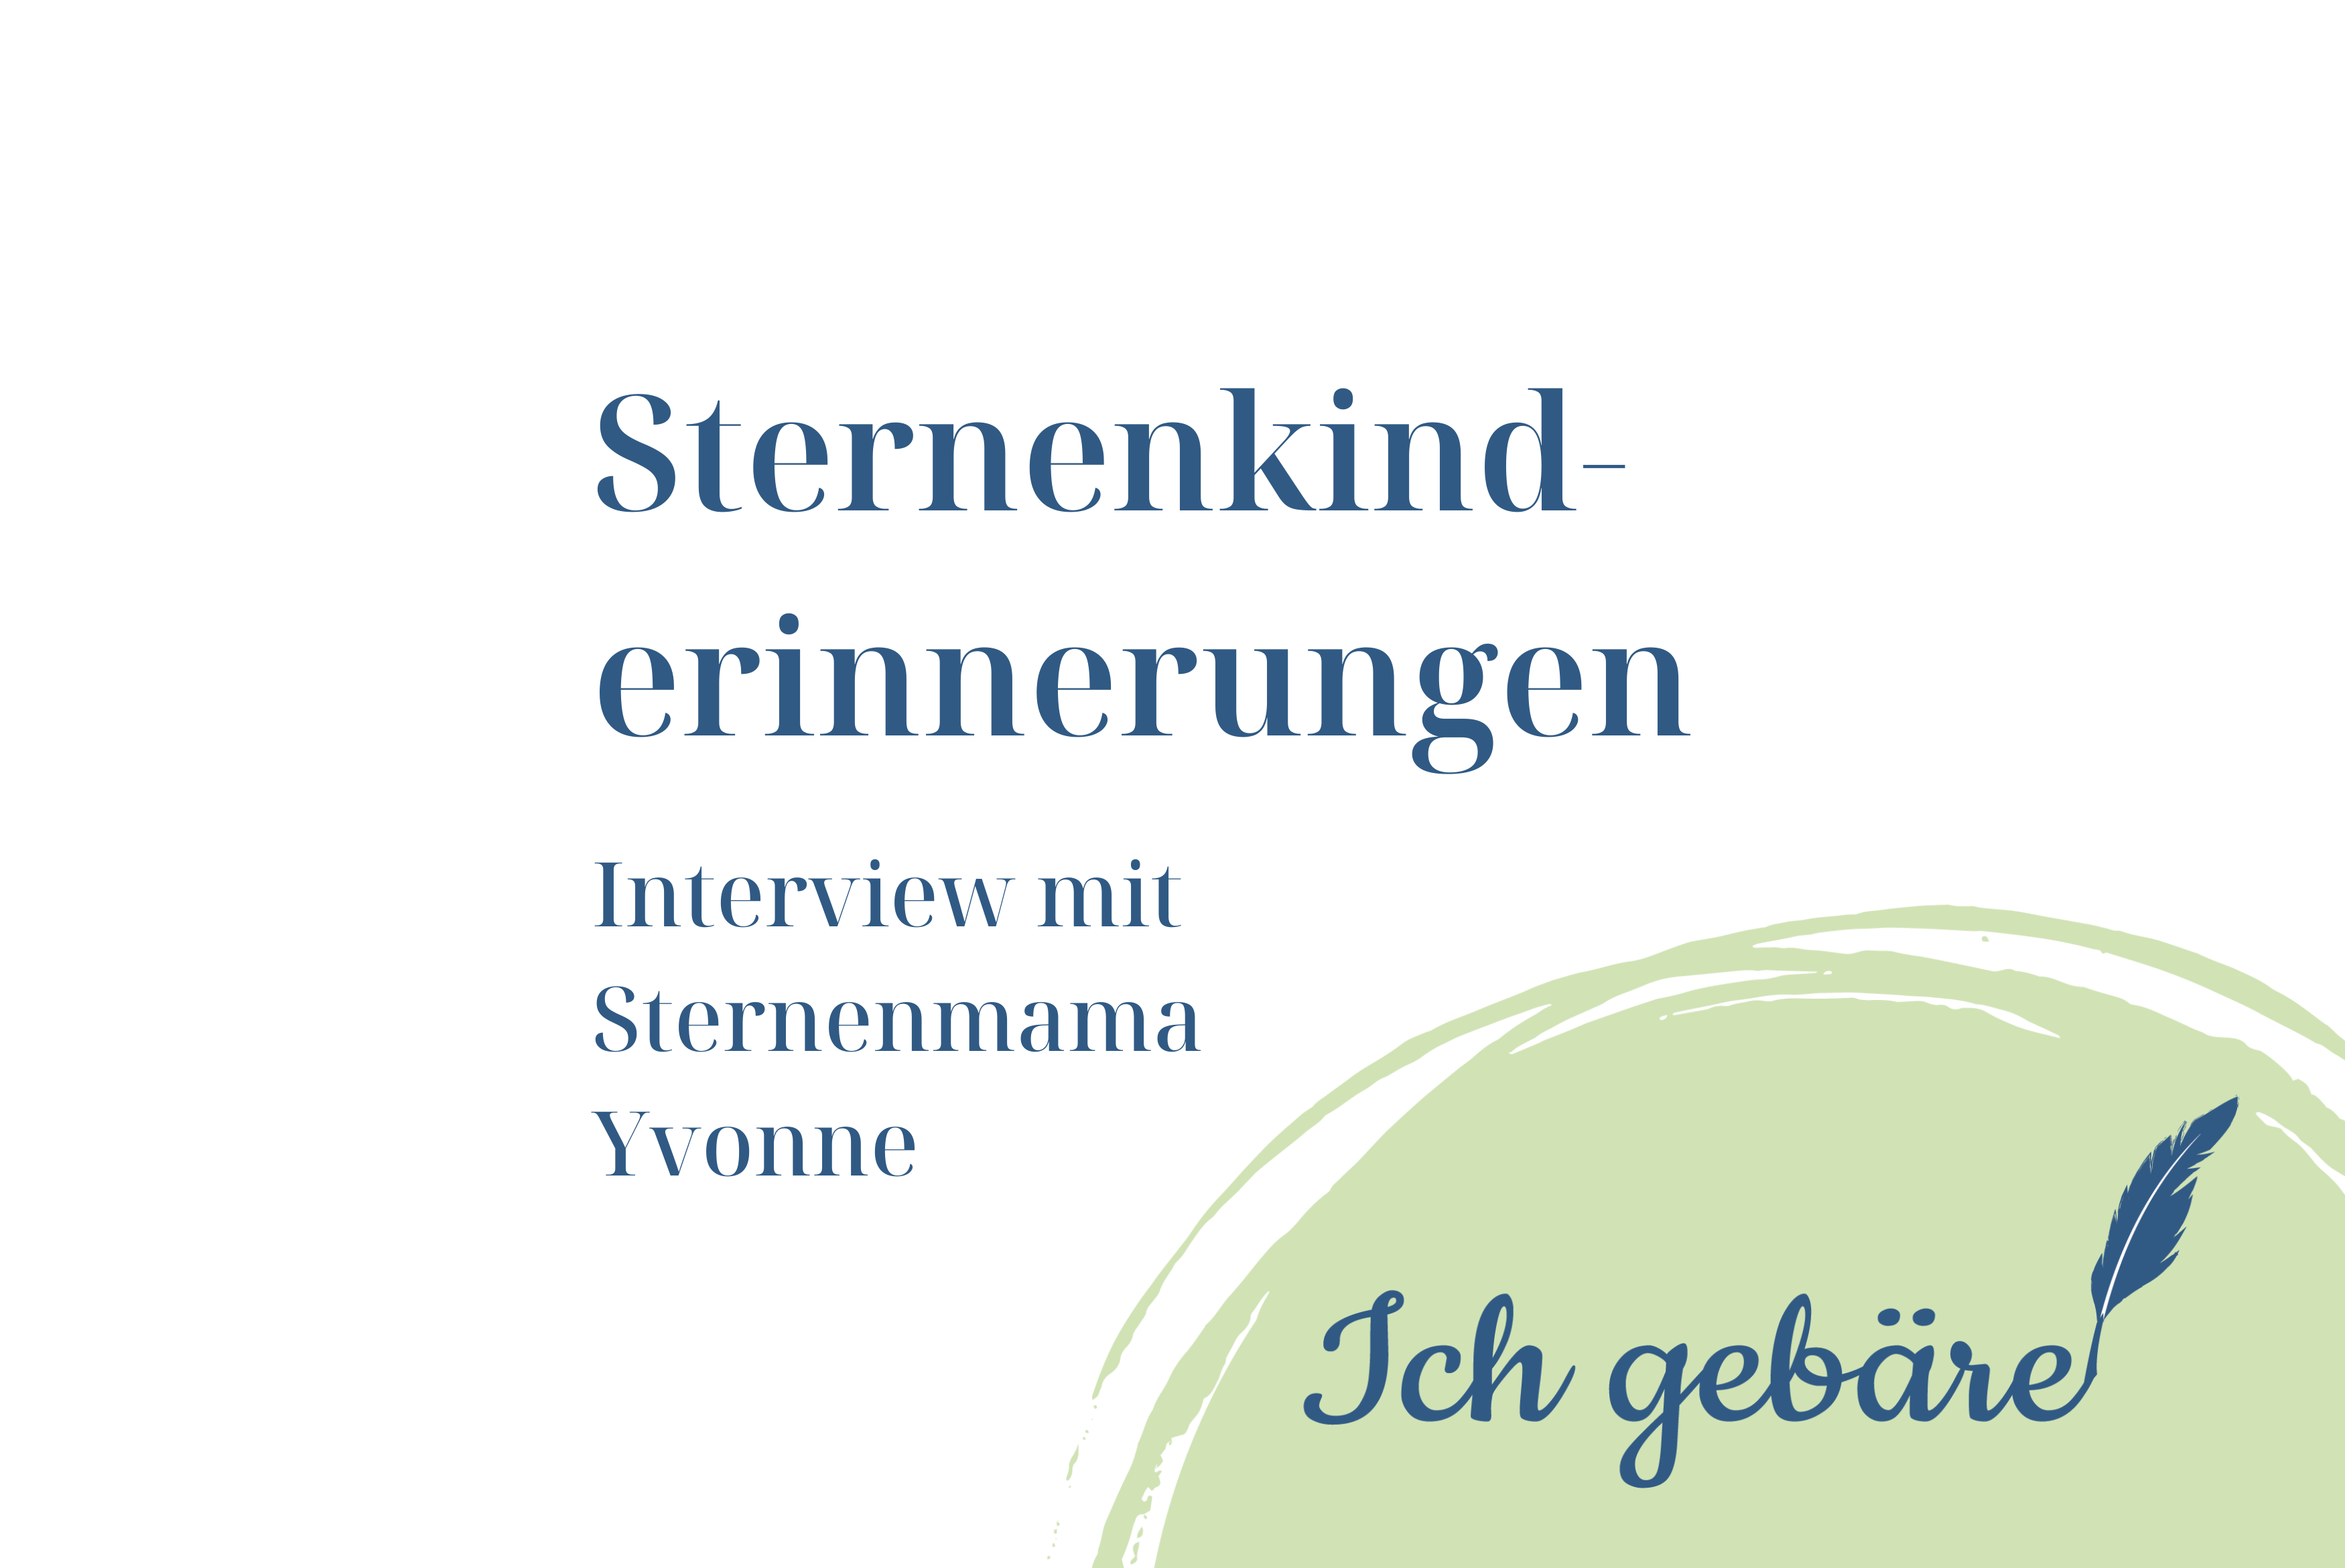 Sternenkind-Erinnerungen Interview Yvonne